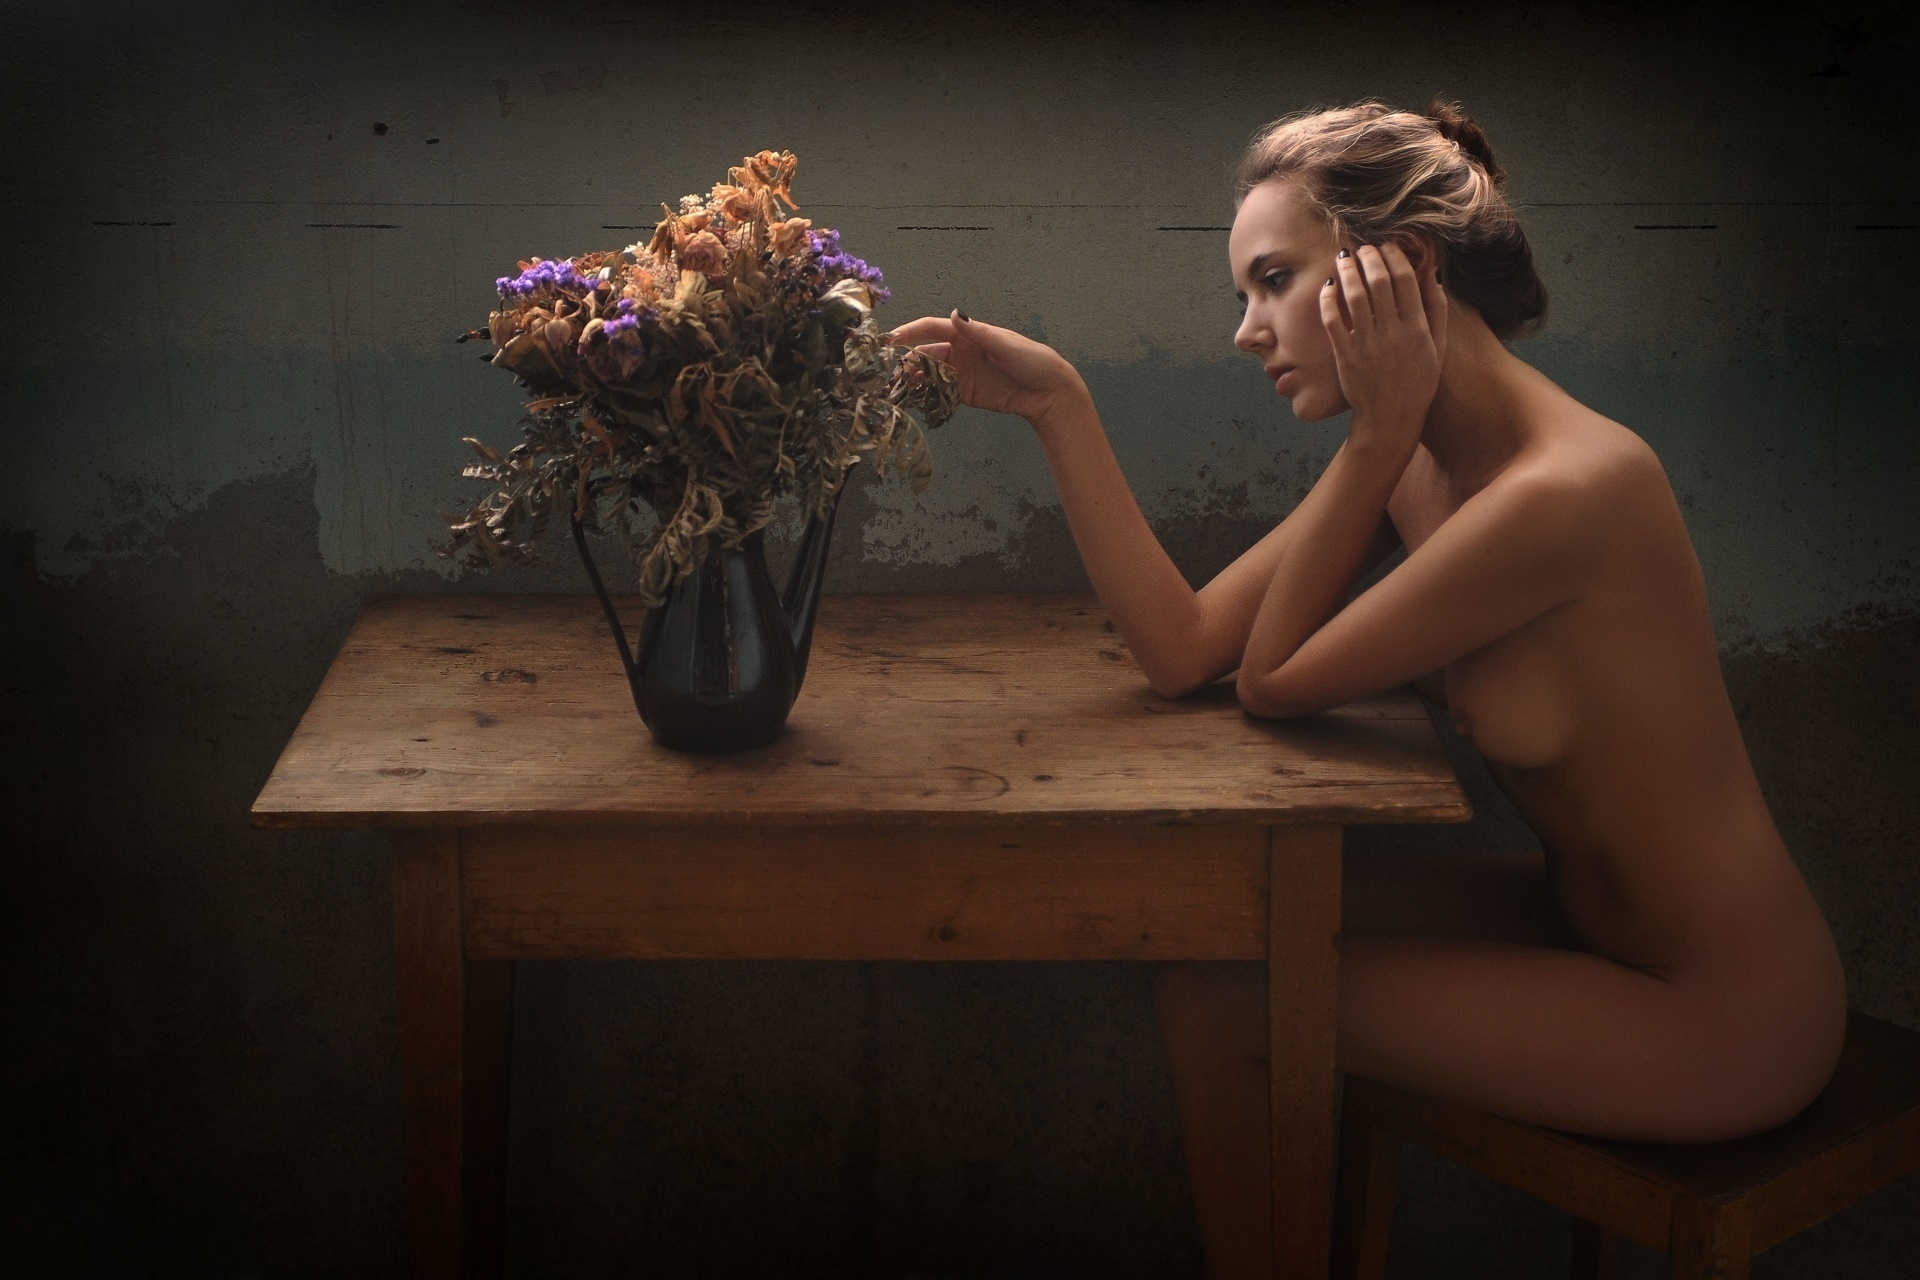 Josettepimenta nude 👉 👌 Дикие голые женщины (81 фото) - порн